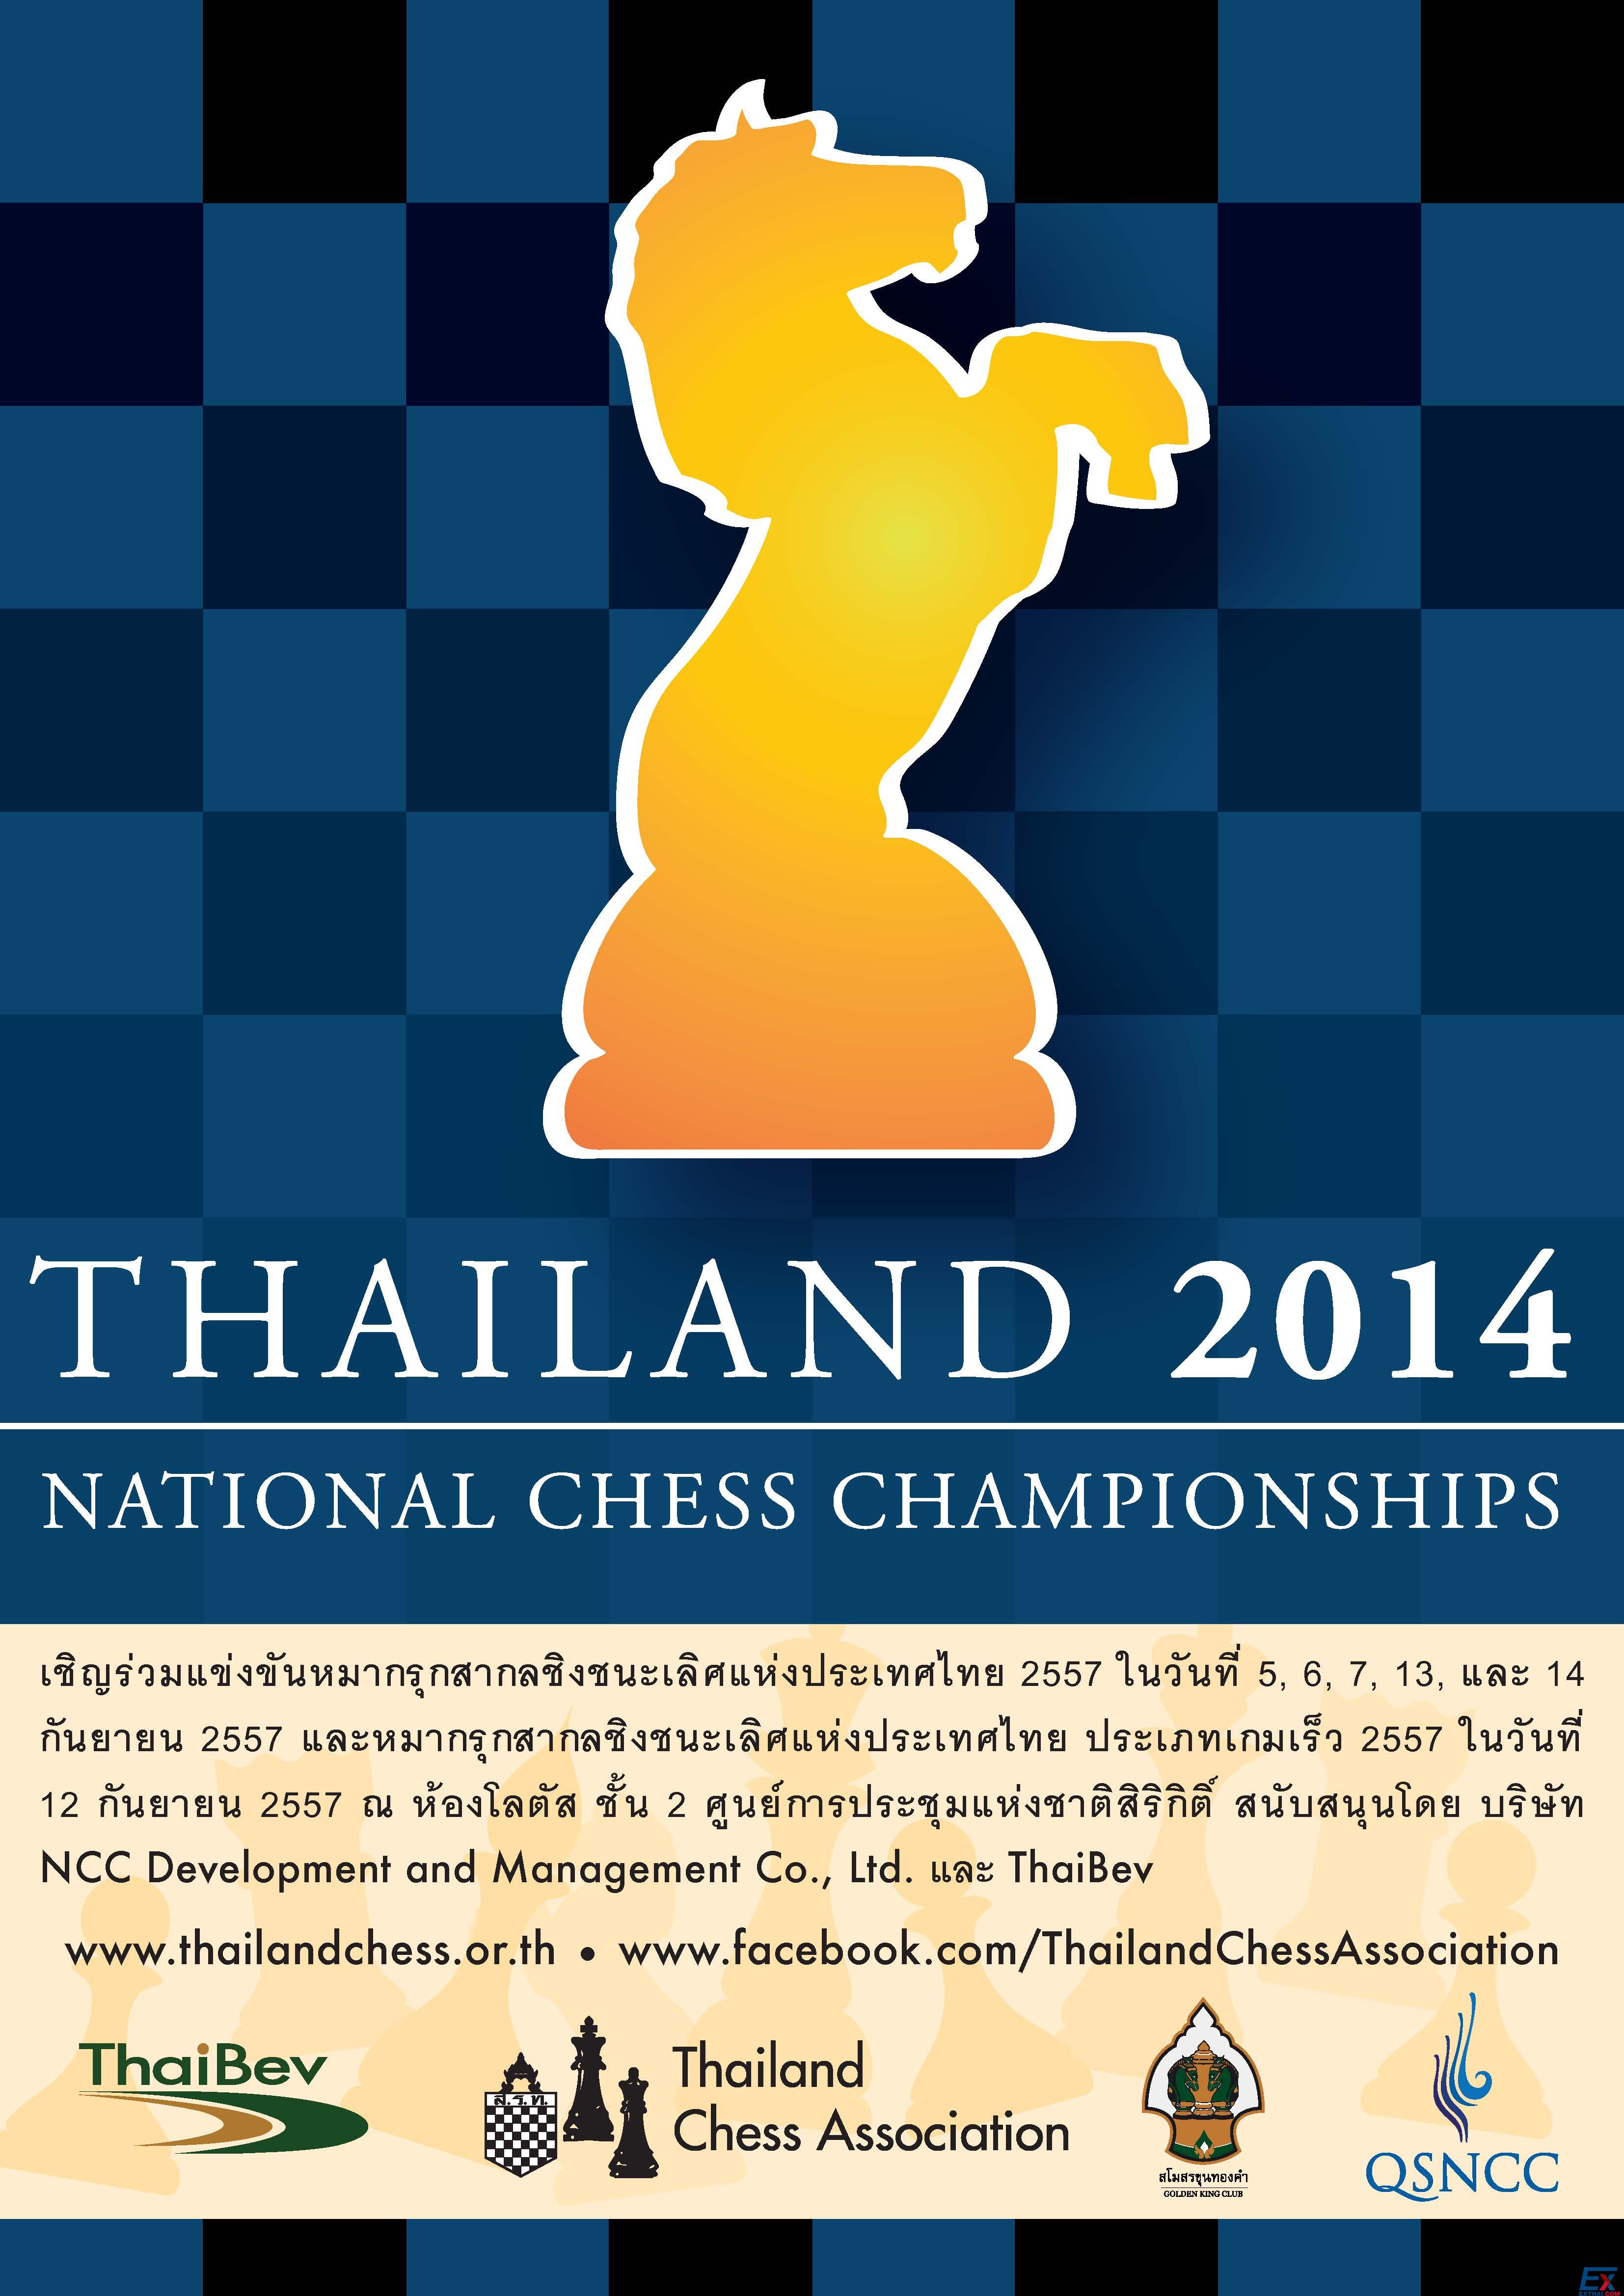 2014年泰国国际象棋冠军赛将于9月12日-14日在诗丽吉会展中心举行